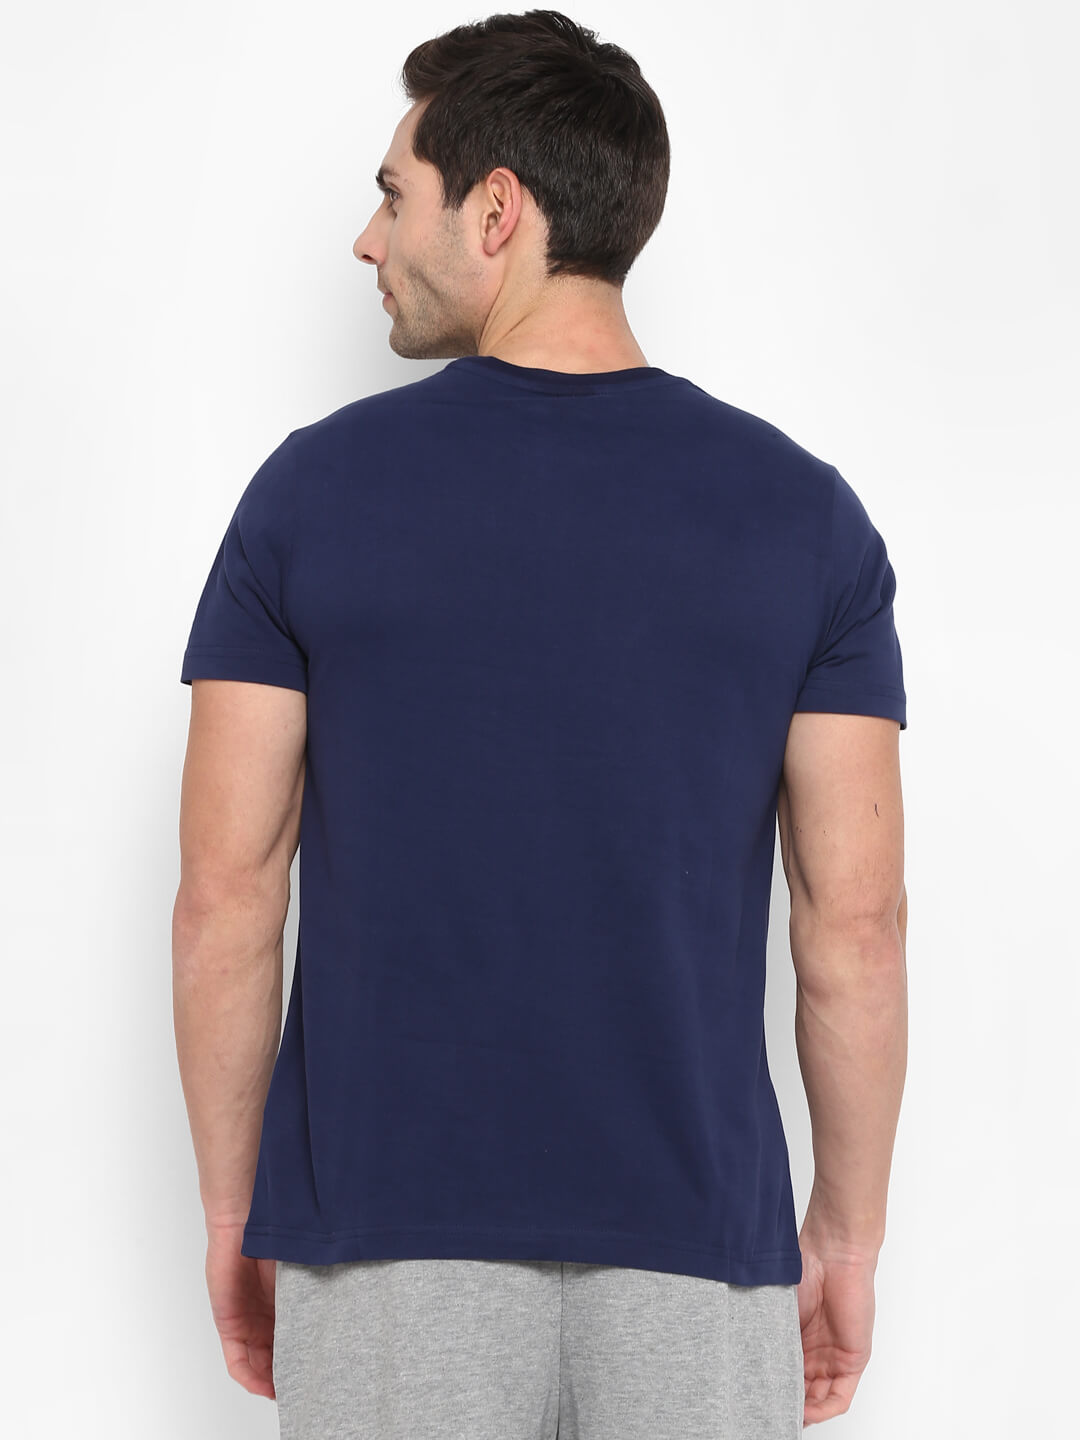 Faun Blue T-Shirts for Men